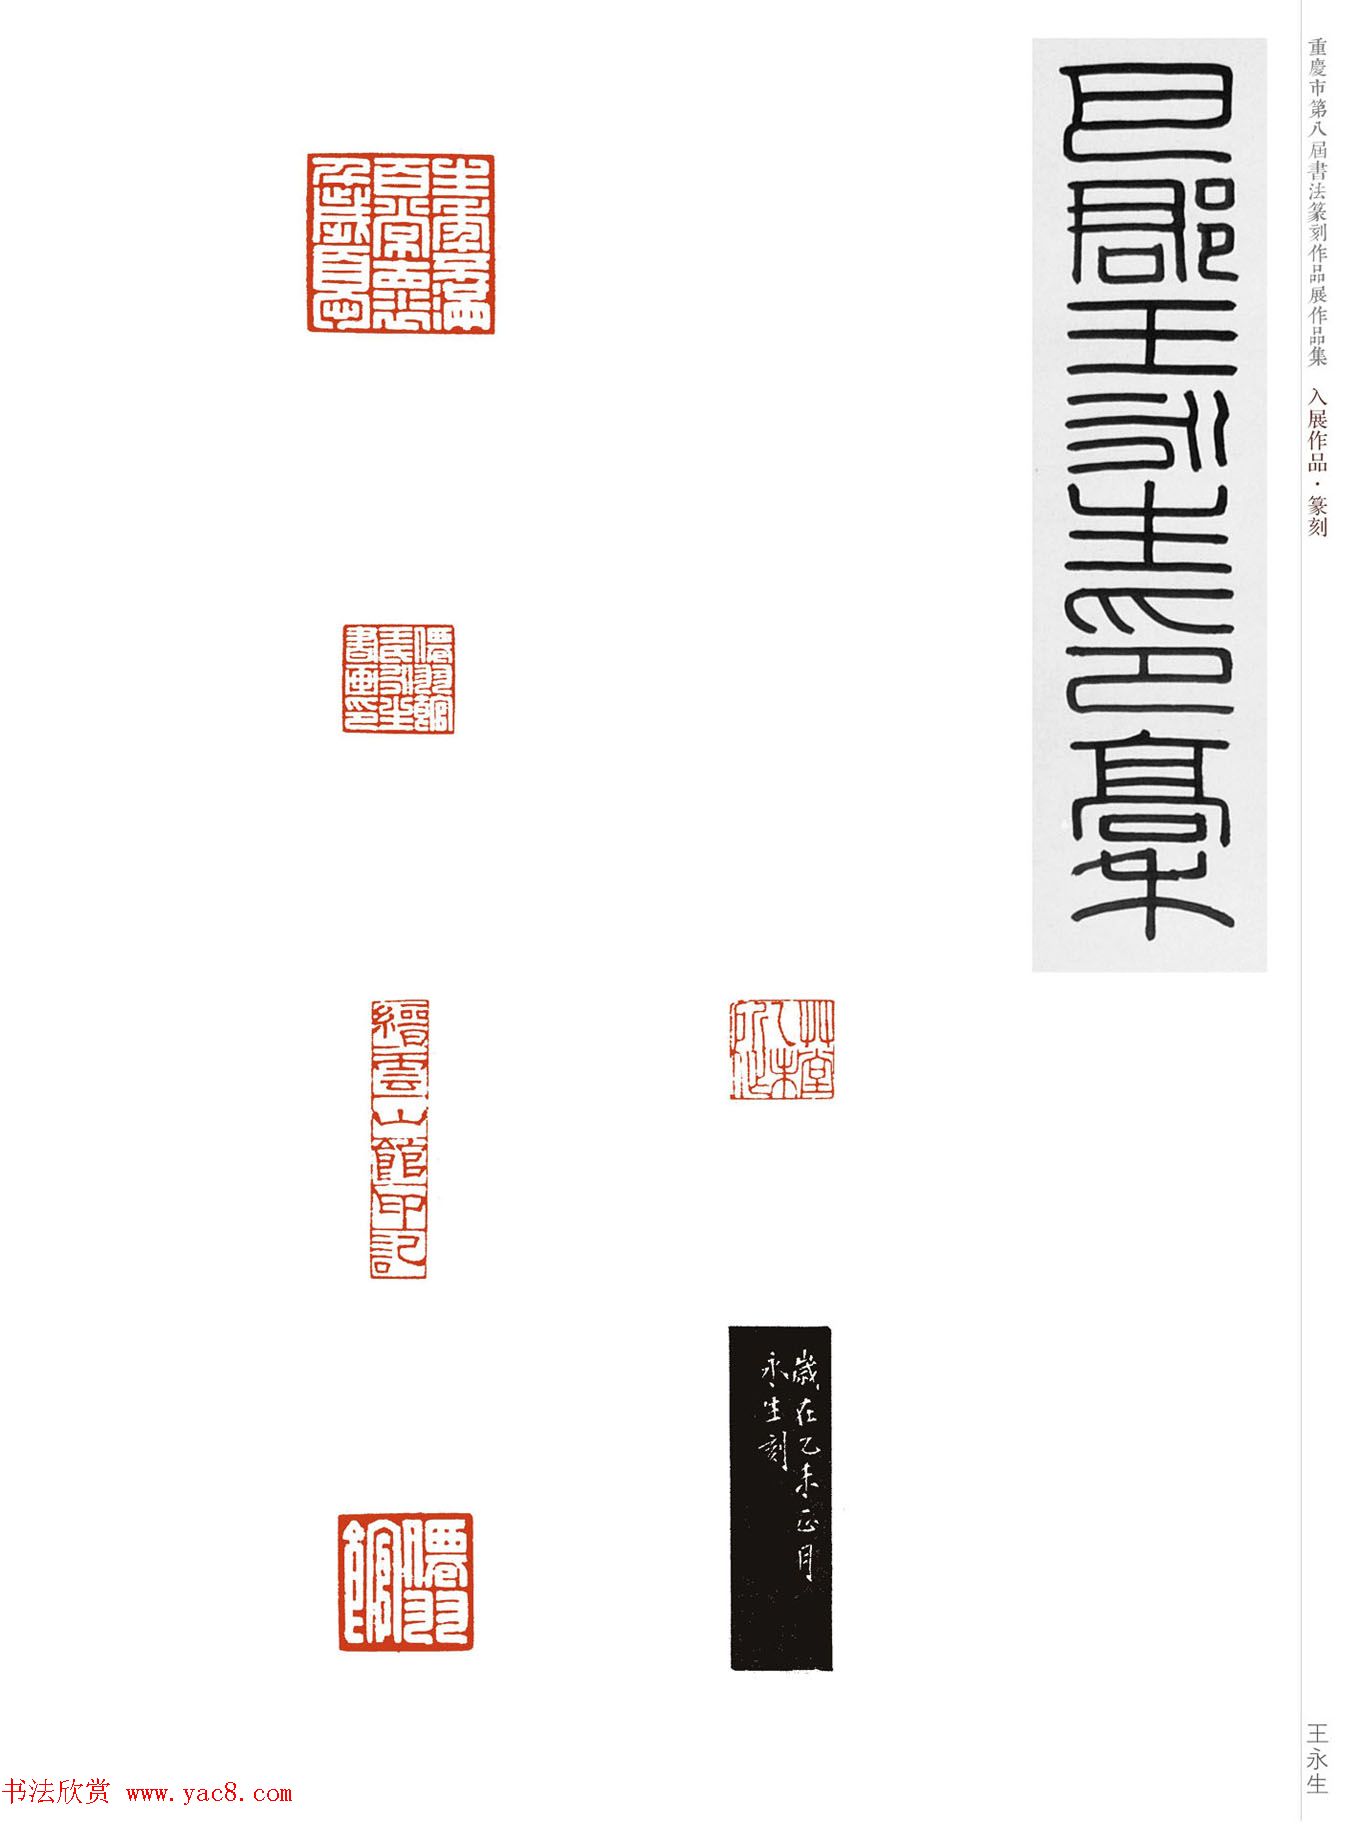 重庆市第八届书法篆刻展获奖入展篆刻作品欣赏